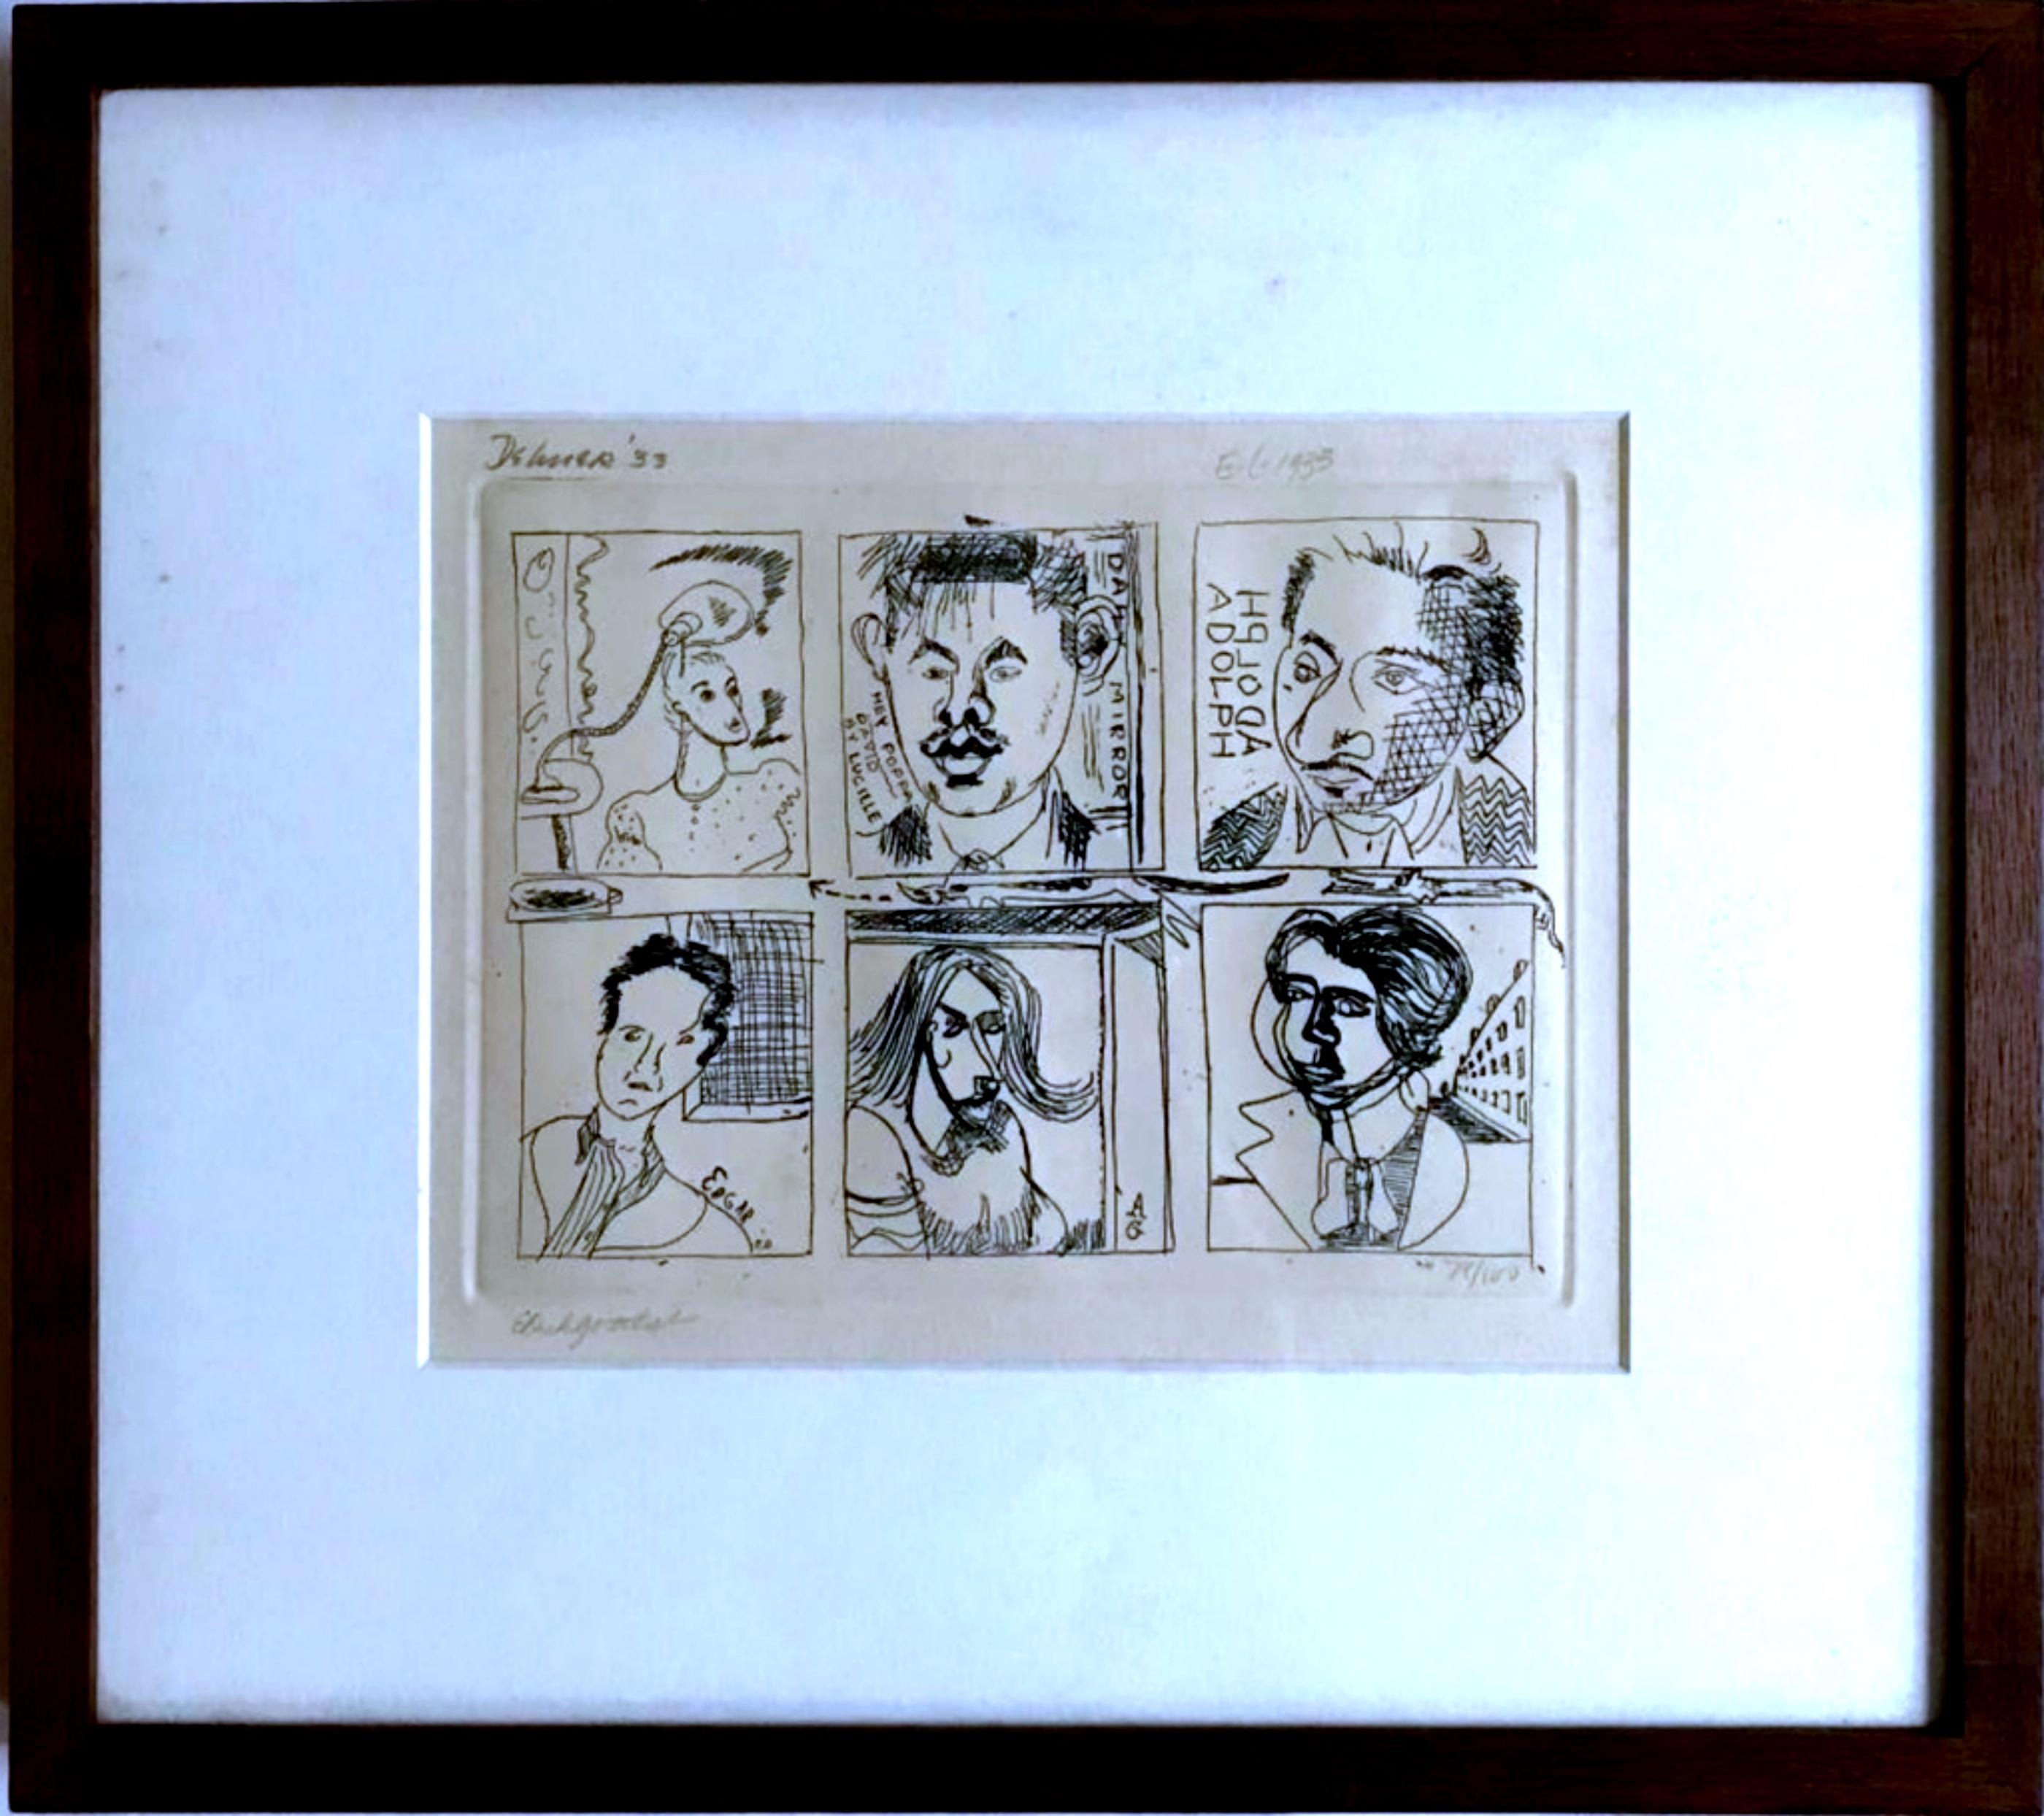 Collaborative Radierung mit 6 Künstlern (Handsigniert von 3 Künstlern) – Print von Adolph Gottlieb